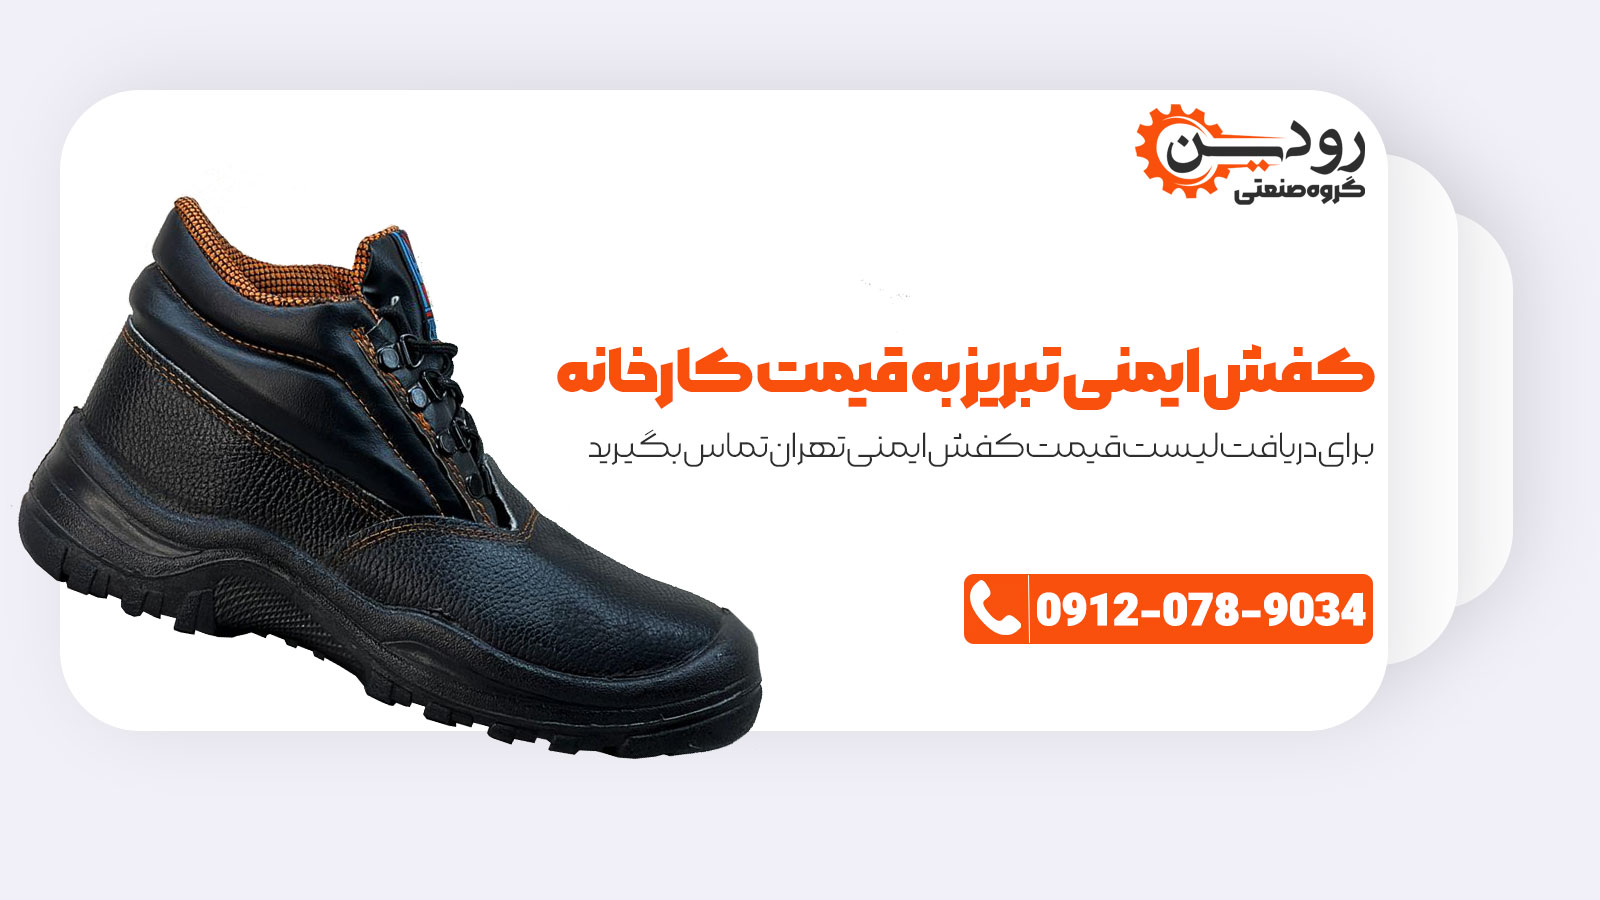 کفش ایمنی تبریز در شهر تهران به قیمت کارخانه و بصورت عمده به فروش میرسد.